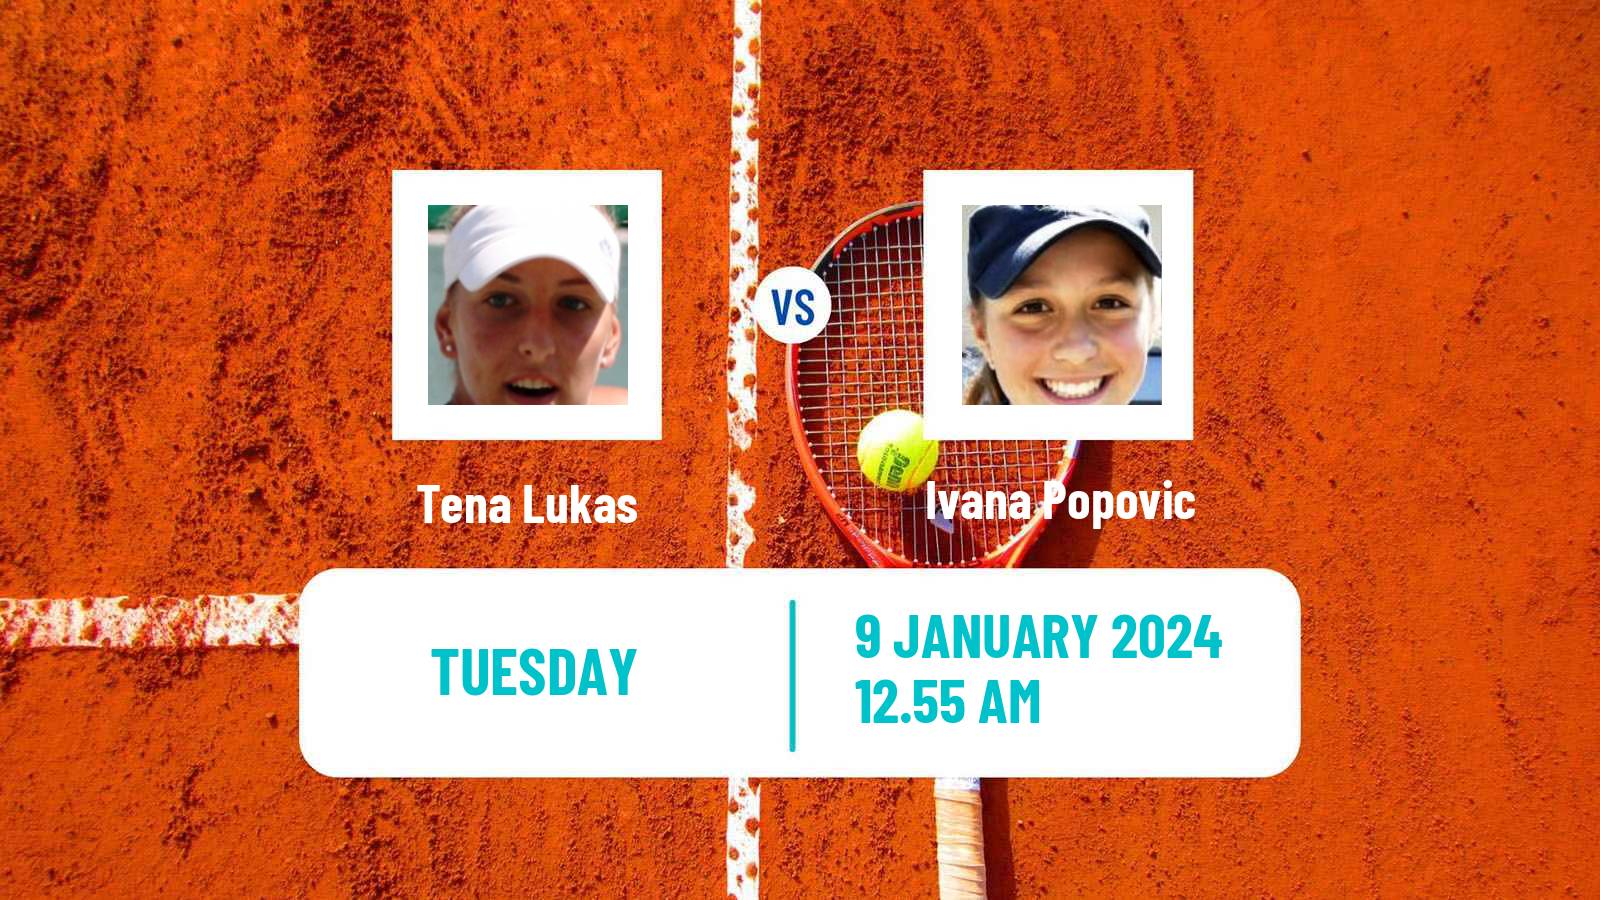 Tennis WTA Australian Open Tena Lukas - Ivana Popovic